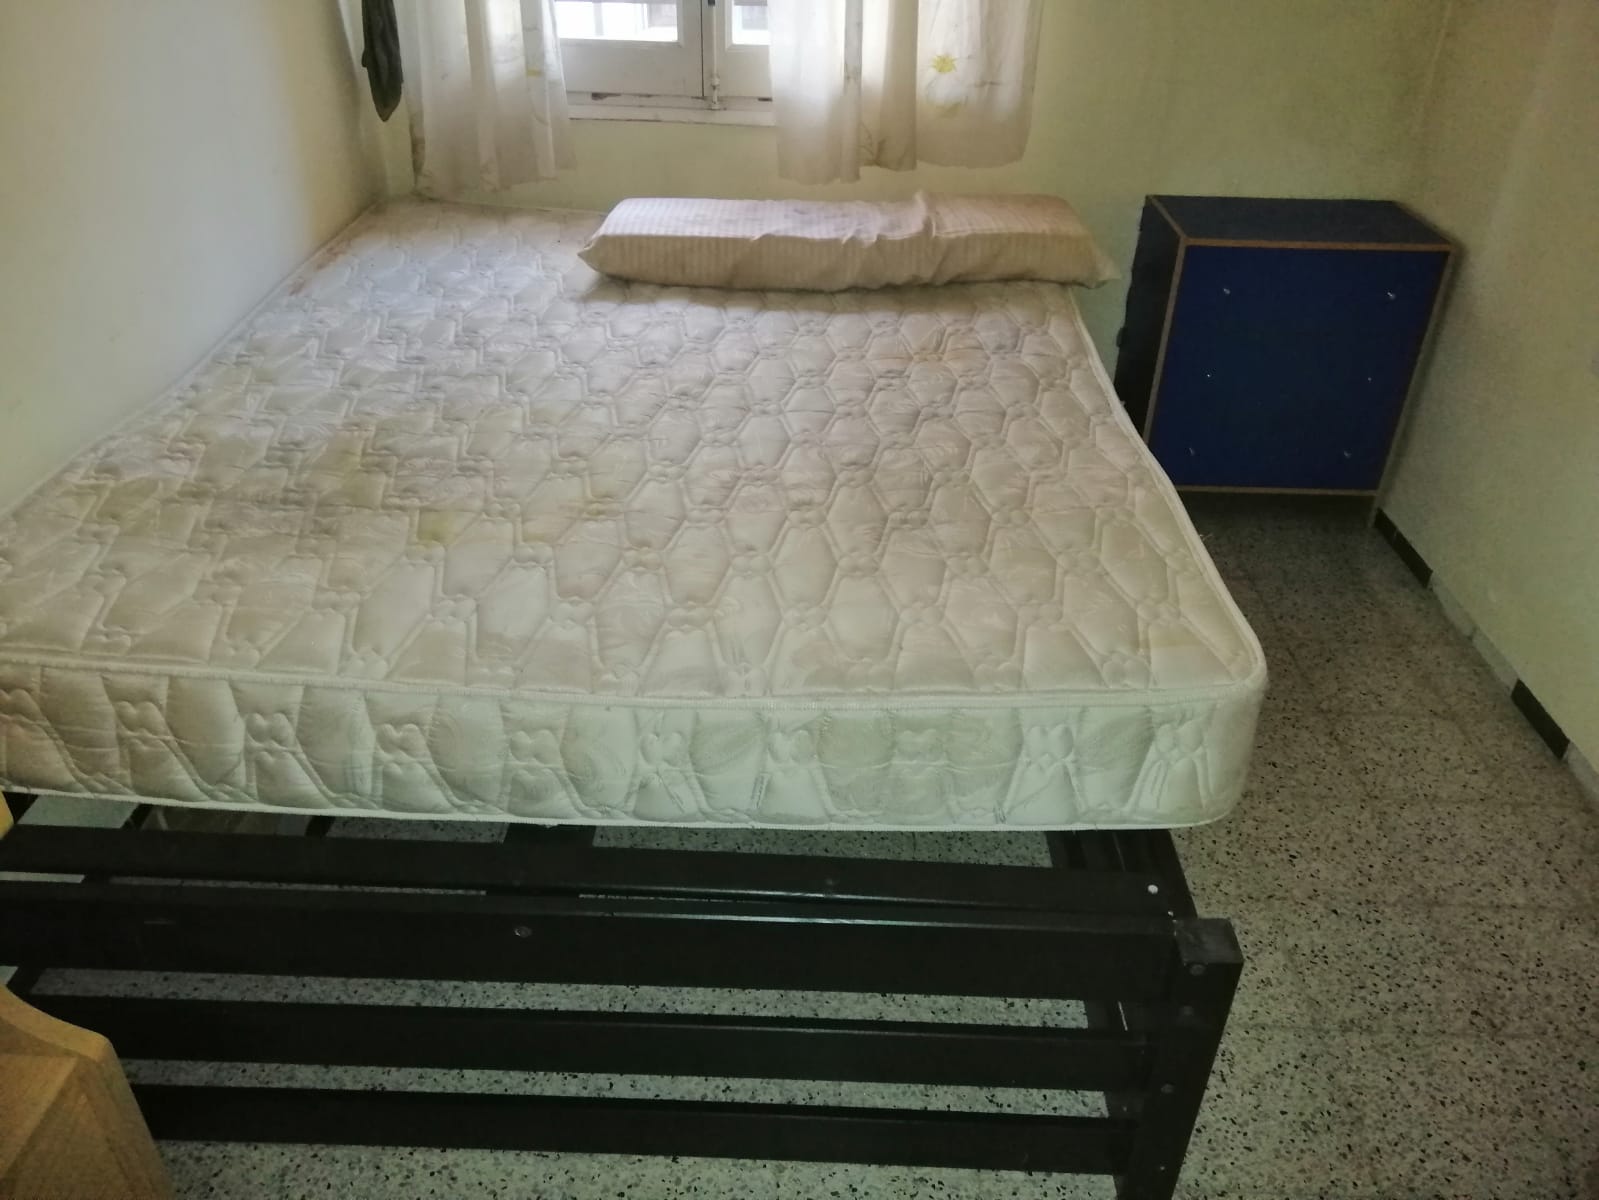 Calidad garantizada en el vaciado de pisos de muebles viejos en L'Hospitalet de Llobregat